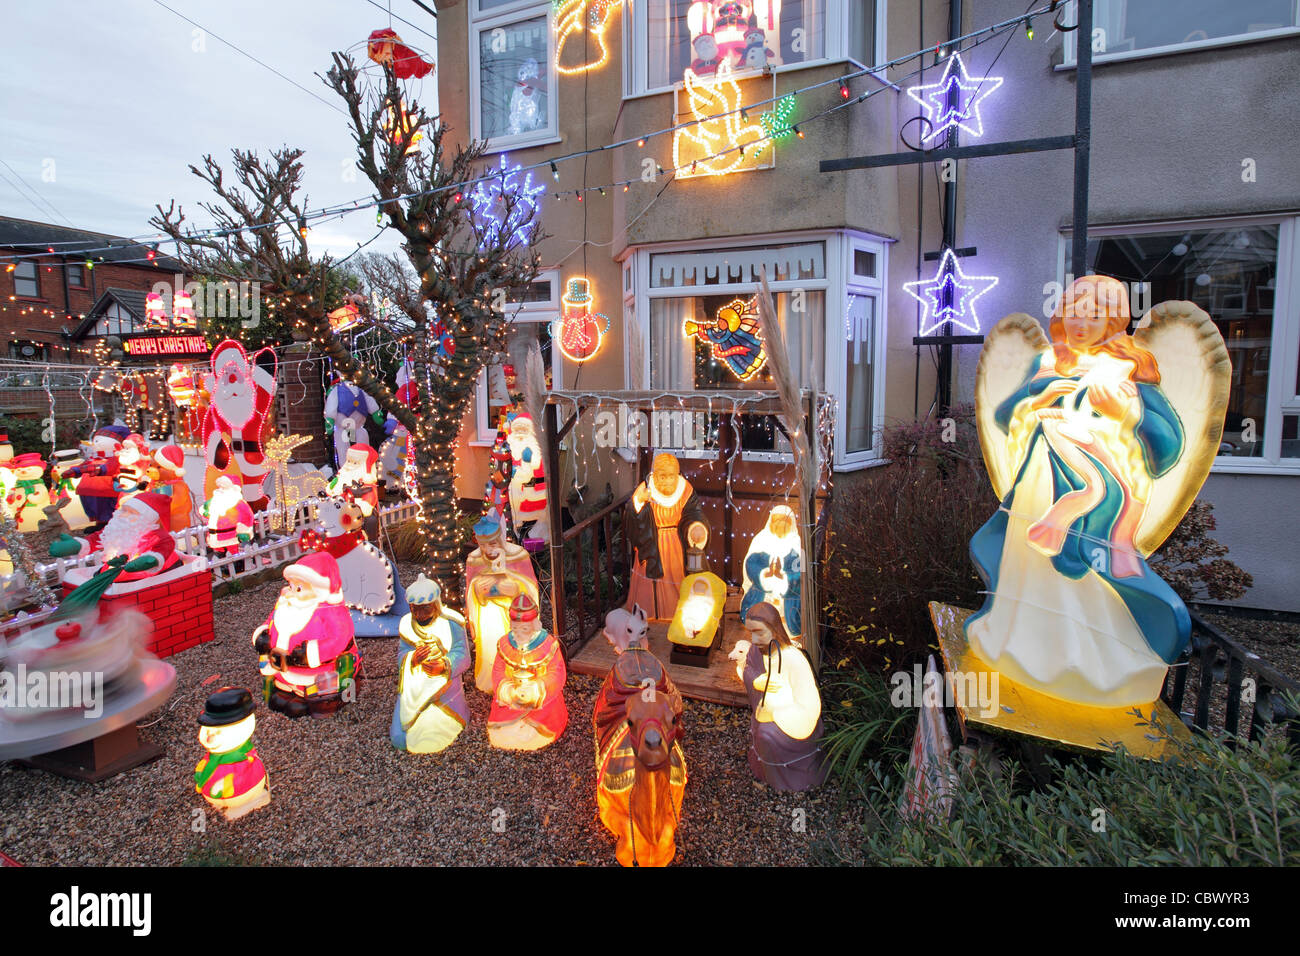 Decorazioni Natalizie Kitsch.Il Kitsch Decorazioni Di Natale In Casa Suburbana Giardino A Leiston Suffolk Regno Unito Foto Stock Alamy